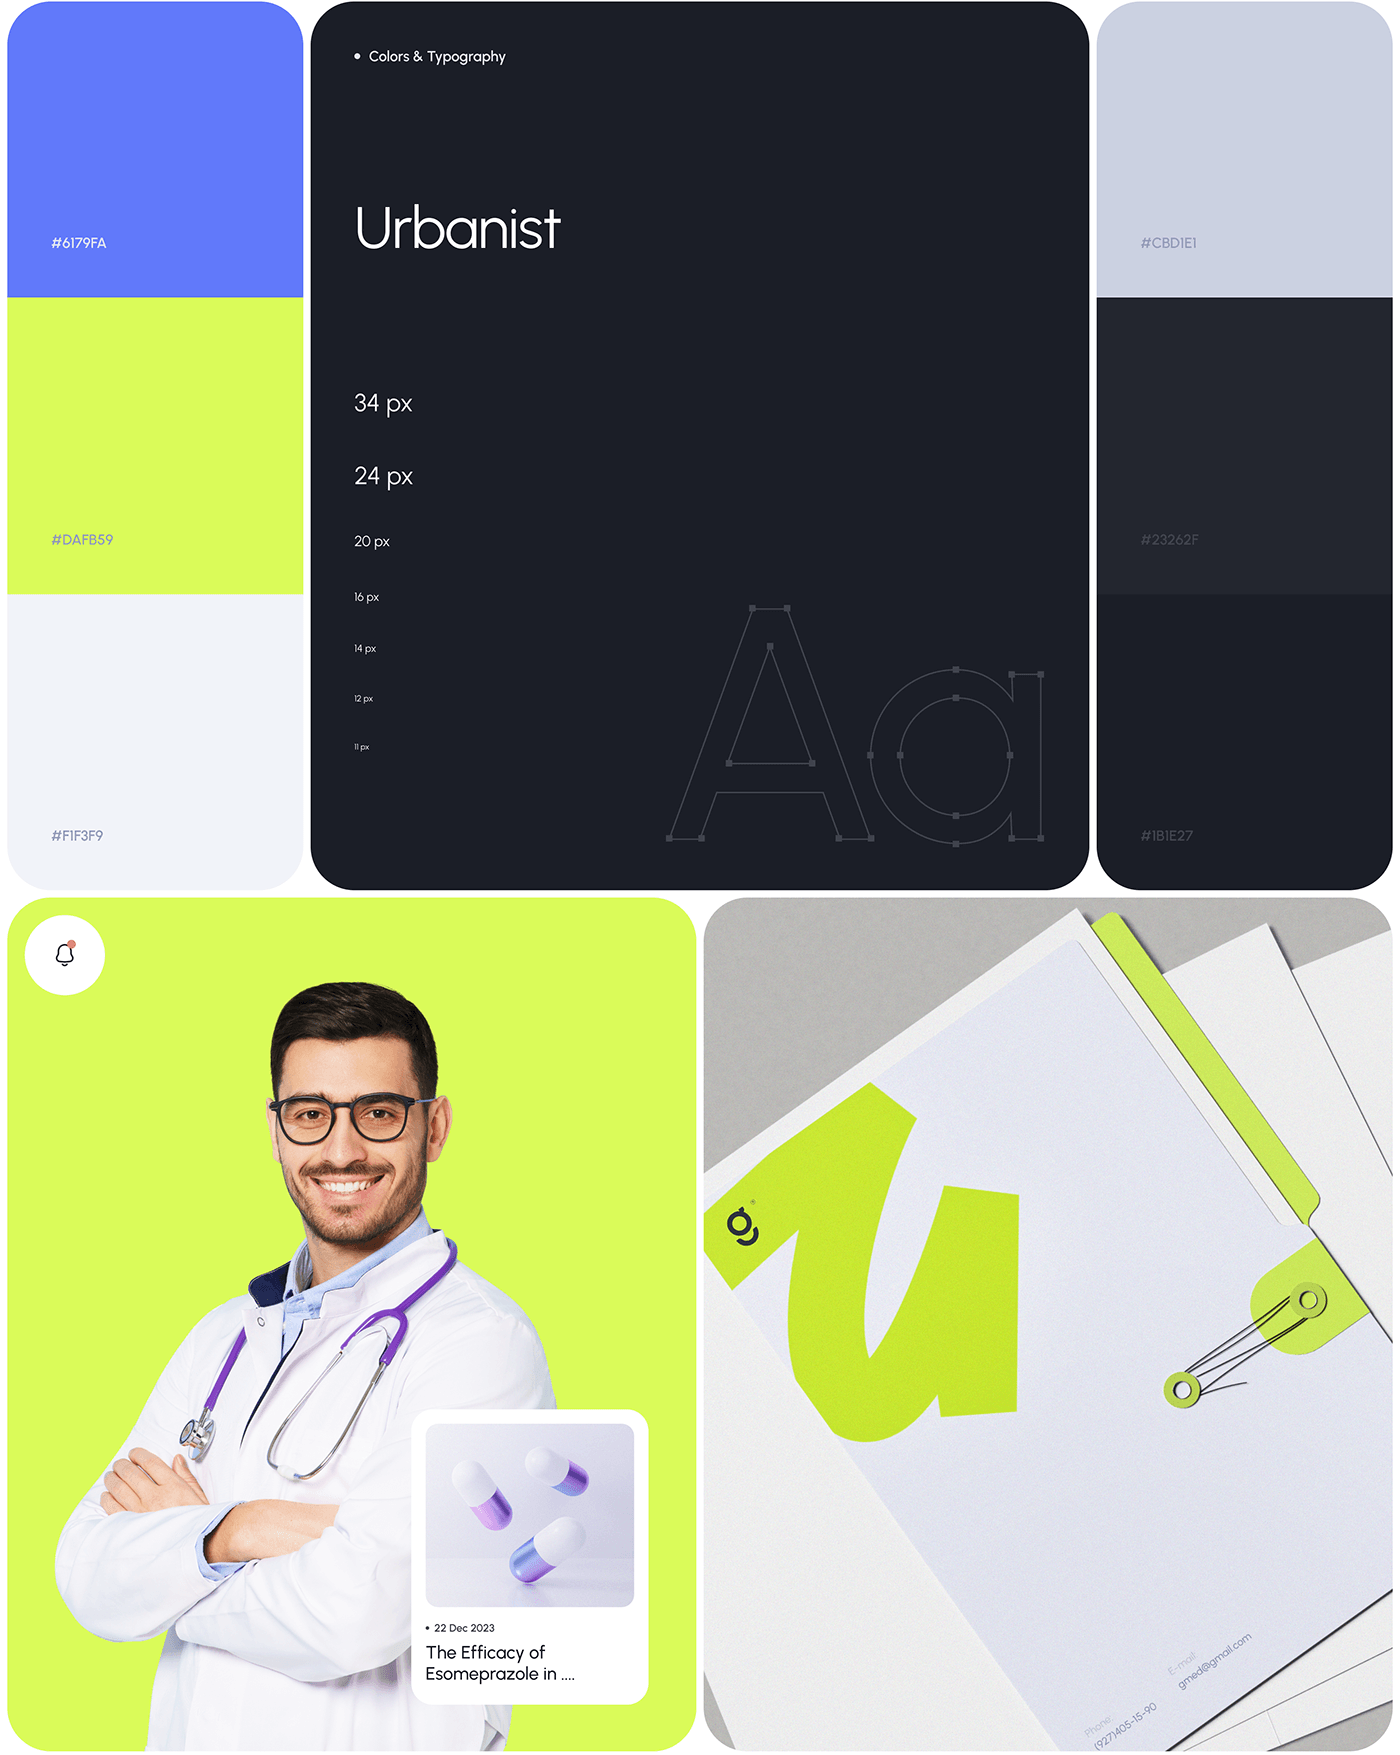 ux UI design app CRM SAAS dashboard Health healthcare medicine